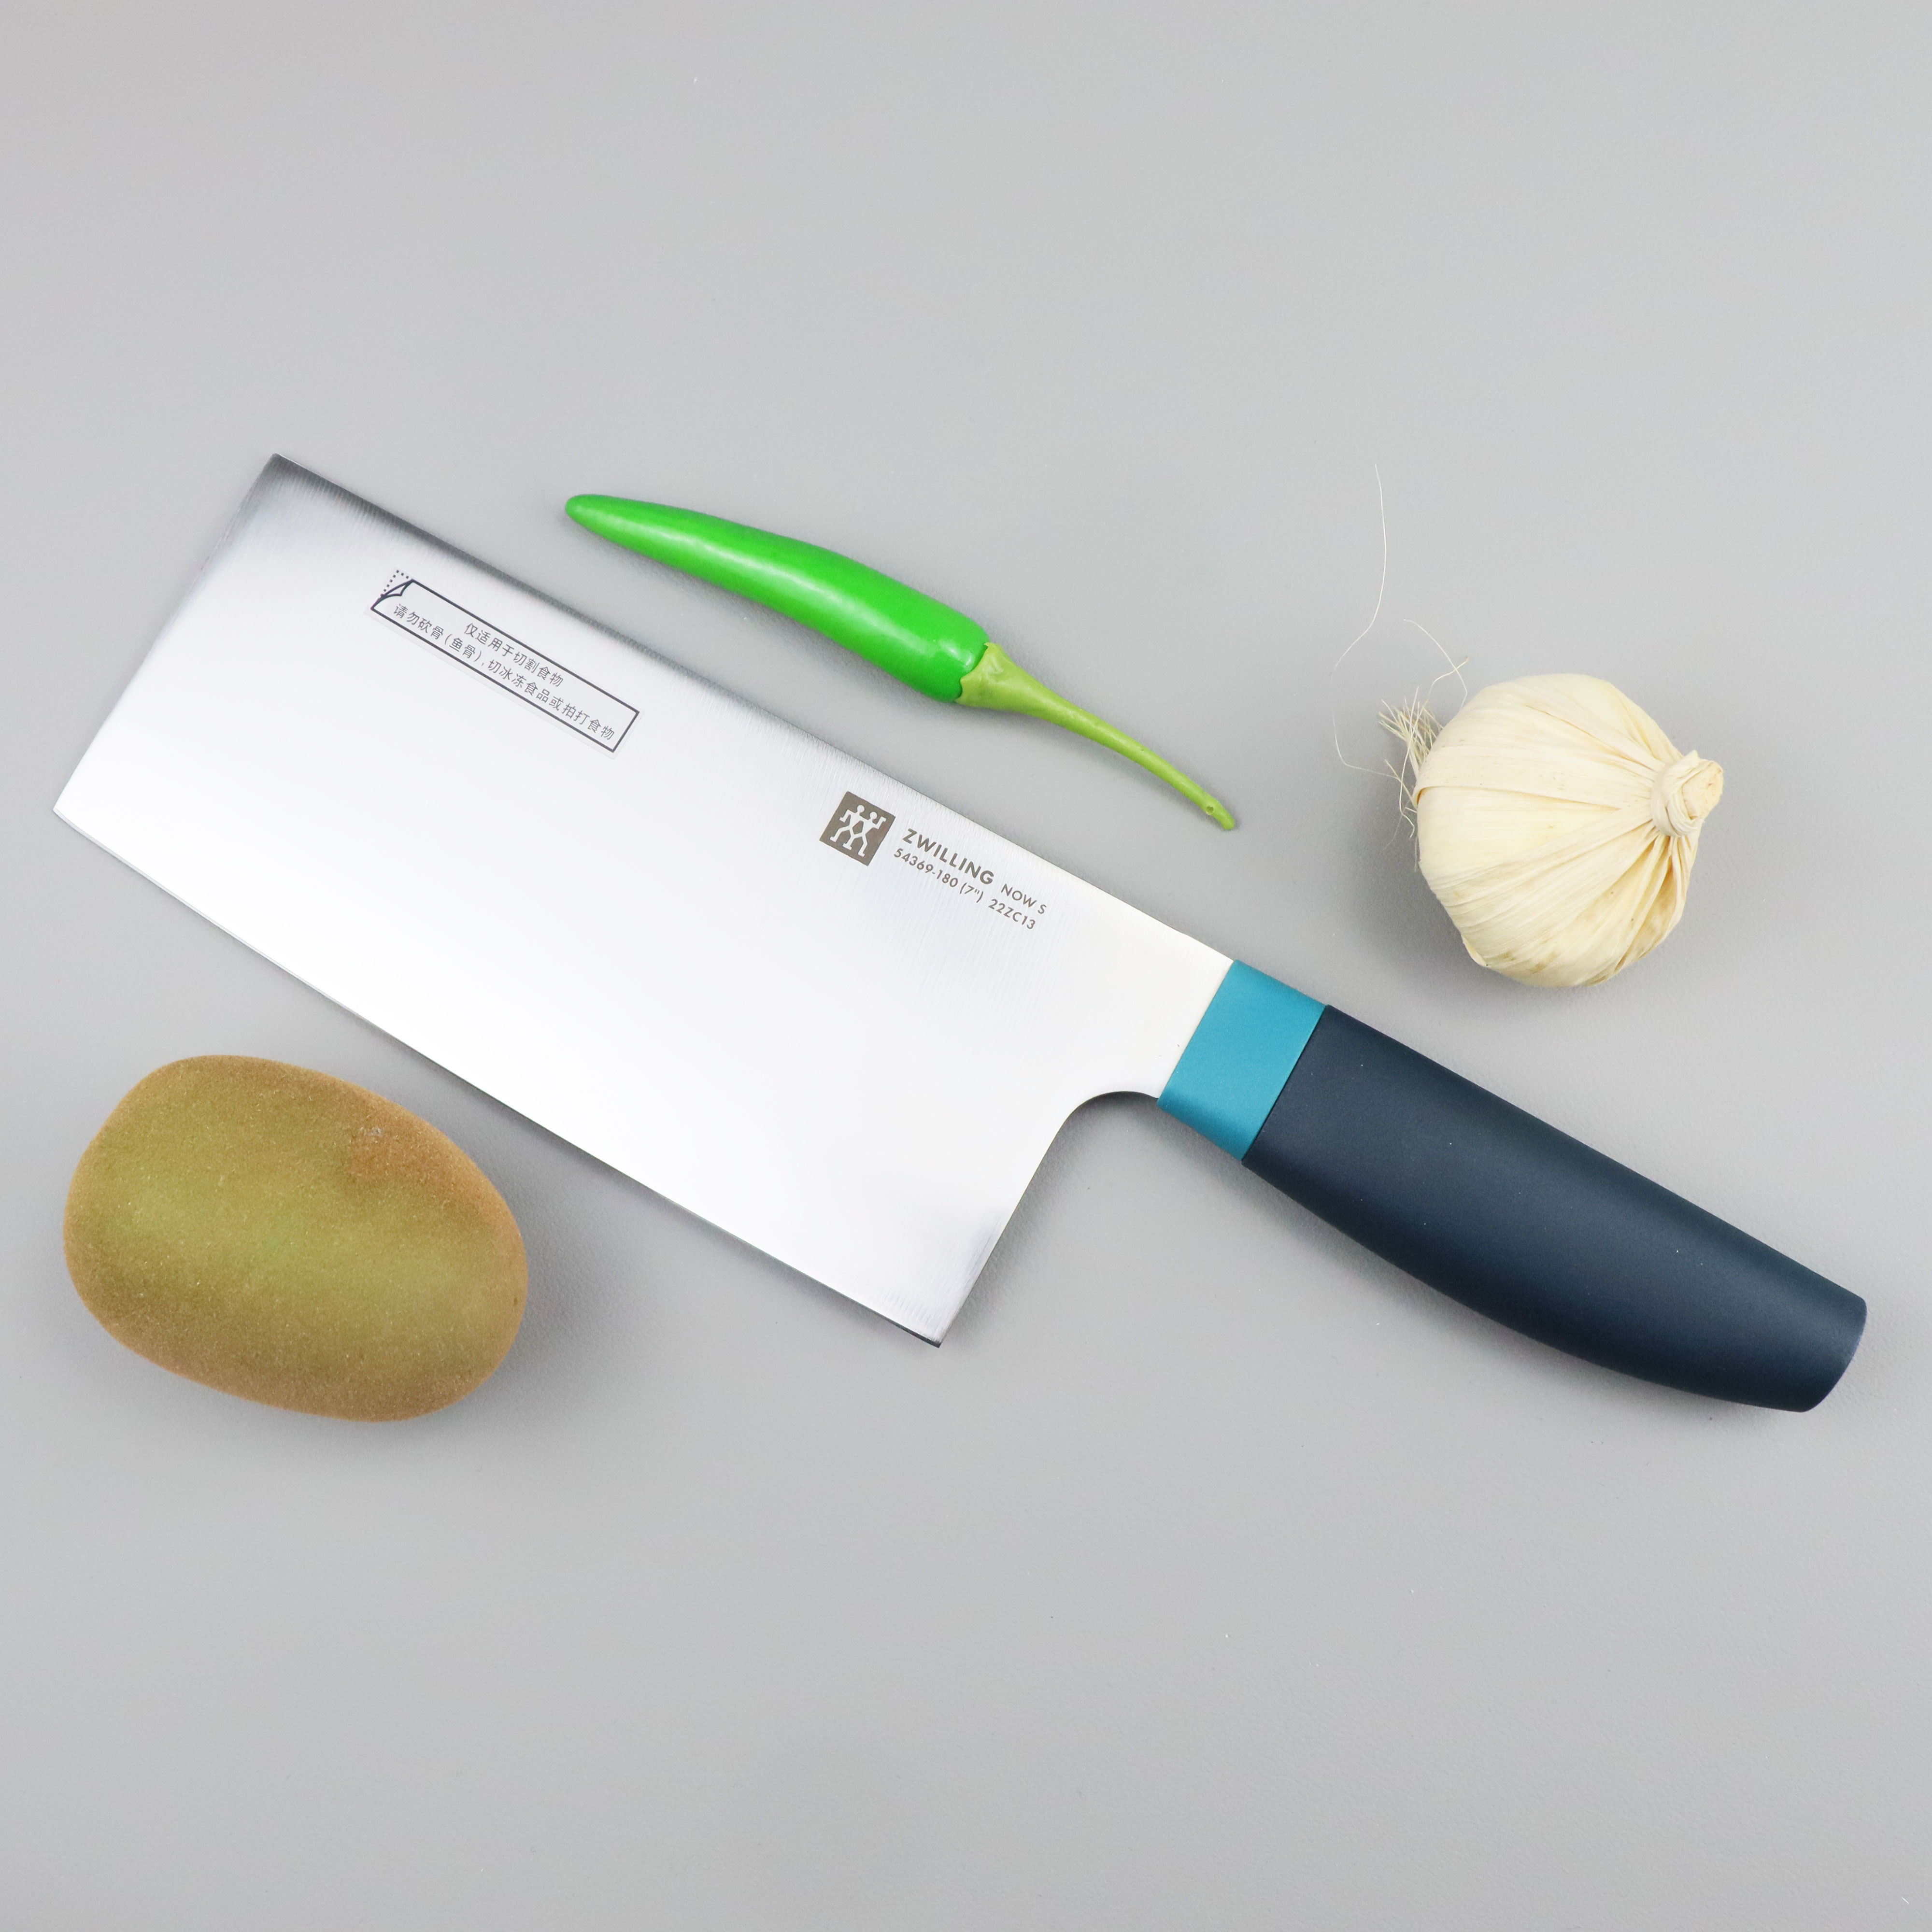 限时特价双立人蓝莓色中片刀菜刀厨房刀具不锈钢果刀套装拆分简装